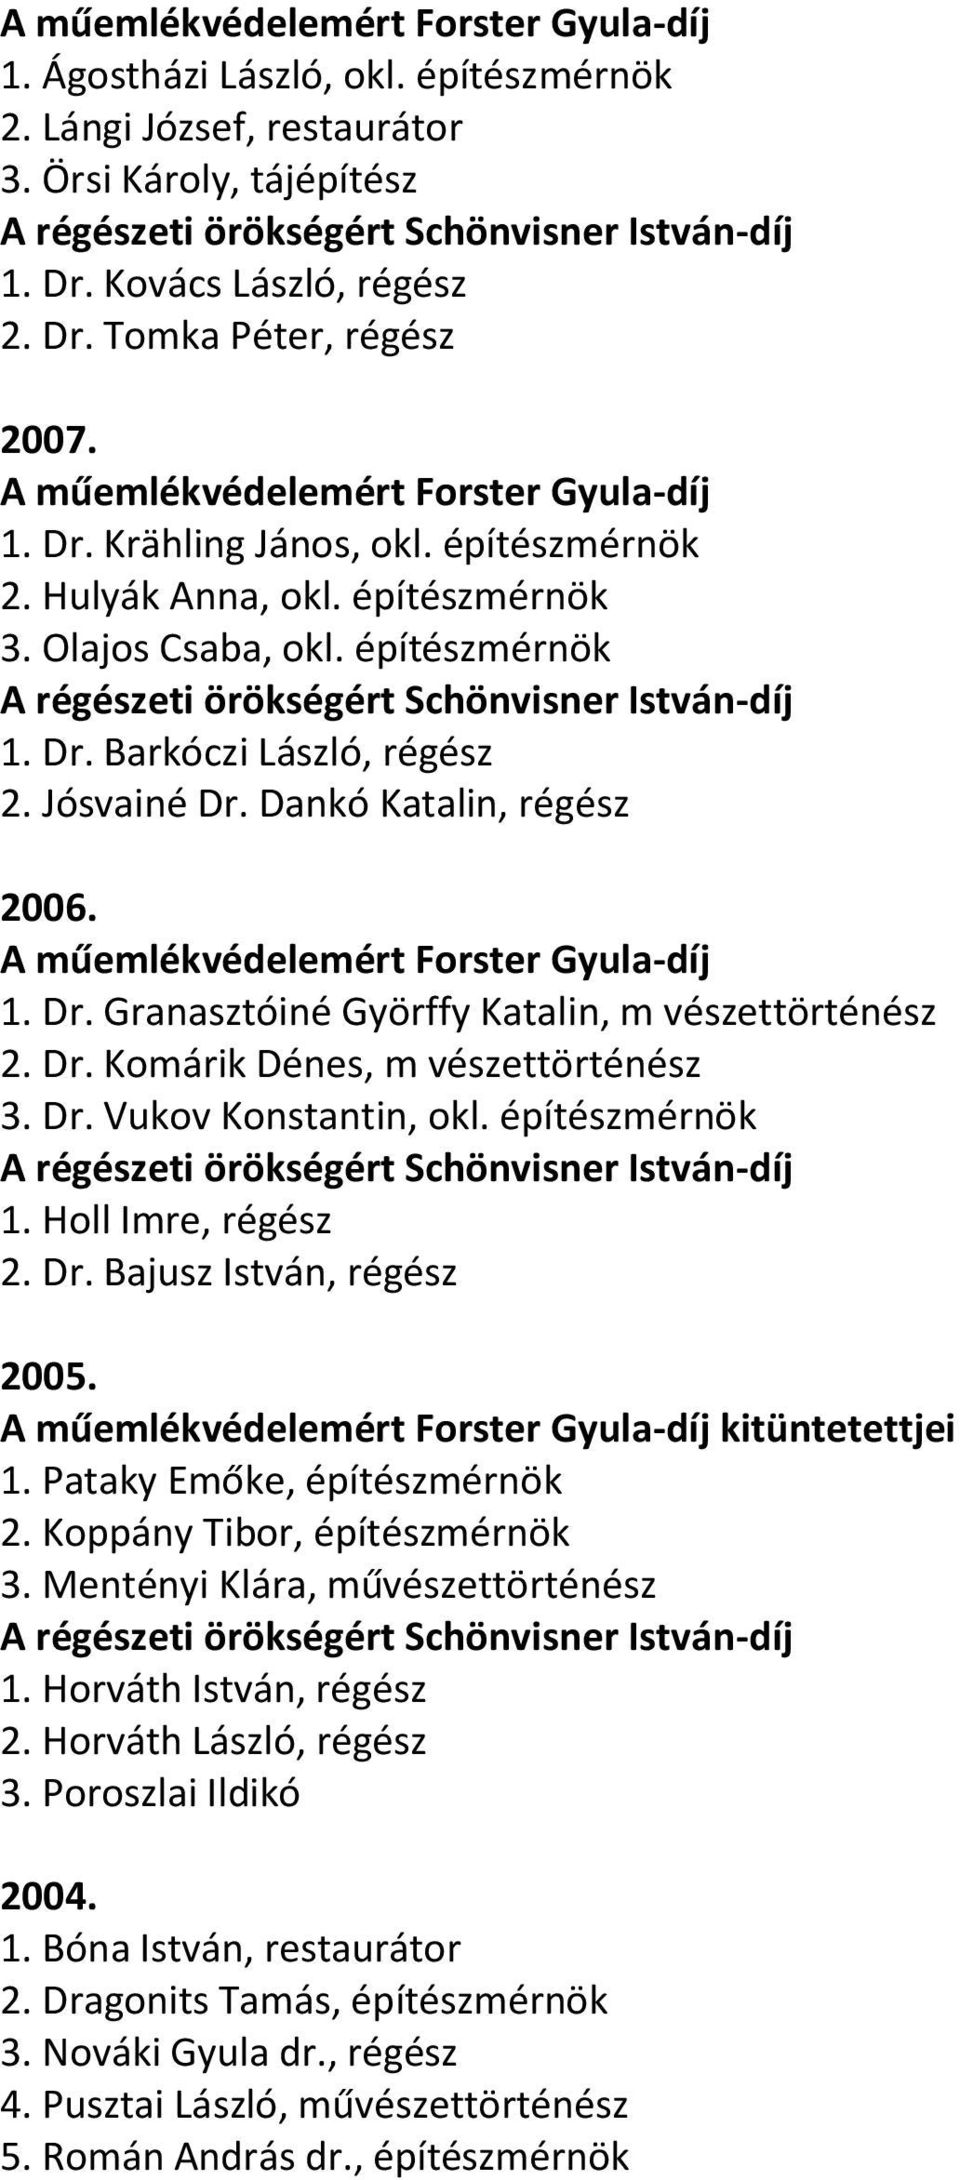 Dr. Komárik Dénes, m vészettörténész 3. Dr. Vukov Konstantin, okl. építészmérnök 1. Holl Imre, régész 2. Dr. Bajusz István, régész 2005. kitüntetettjei 1. Pataky Emőke, építészmérnök 2.